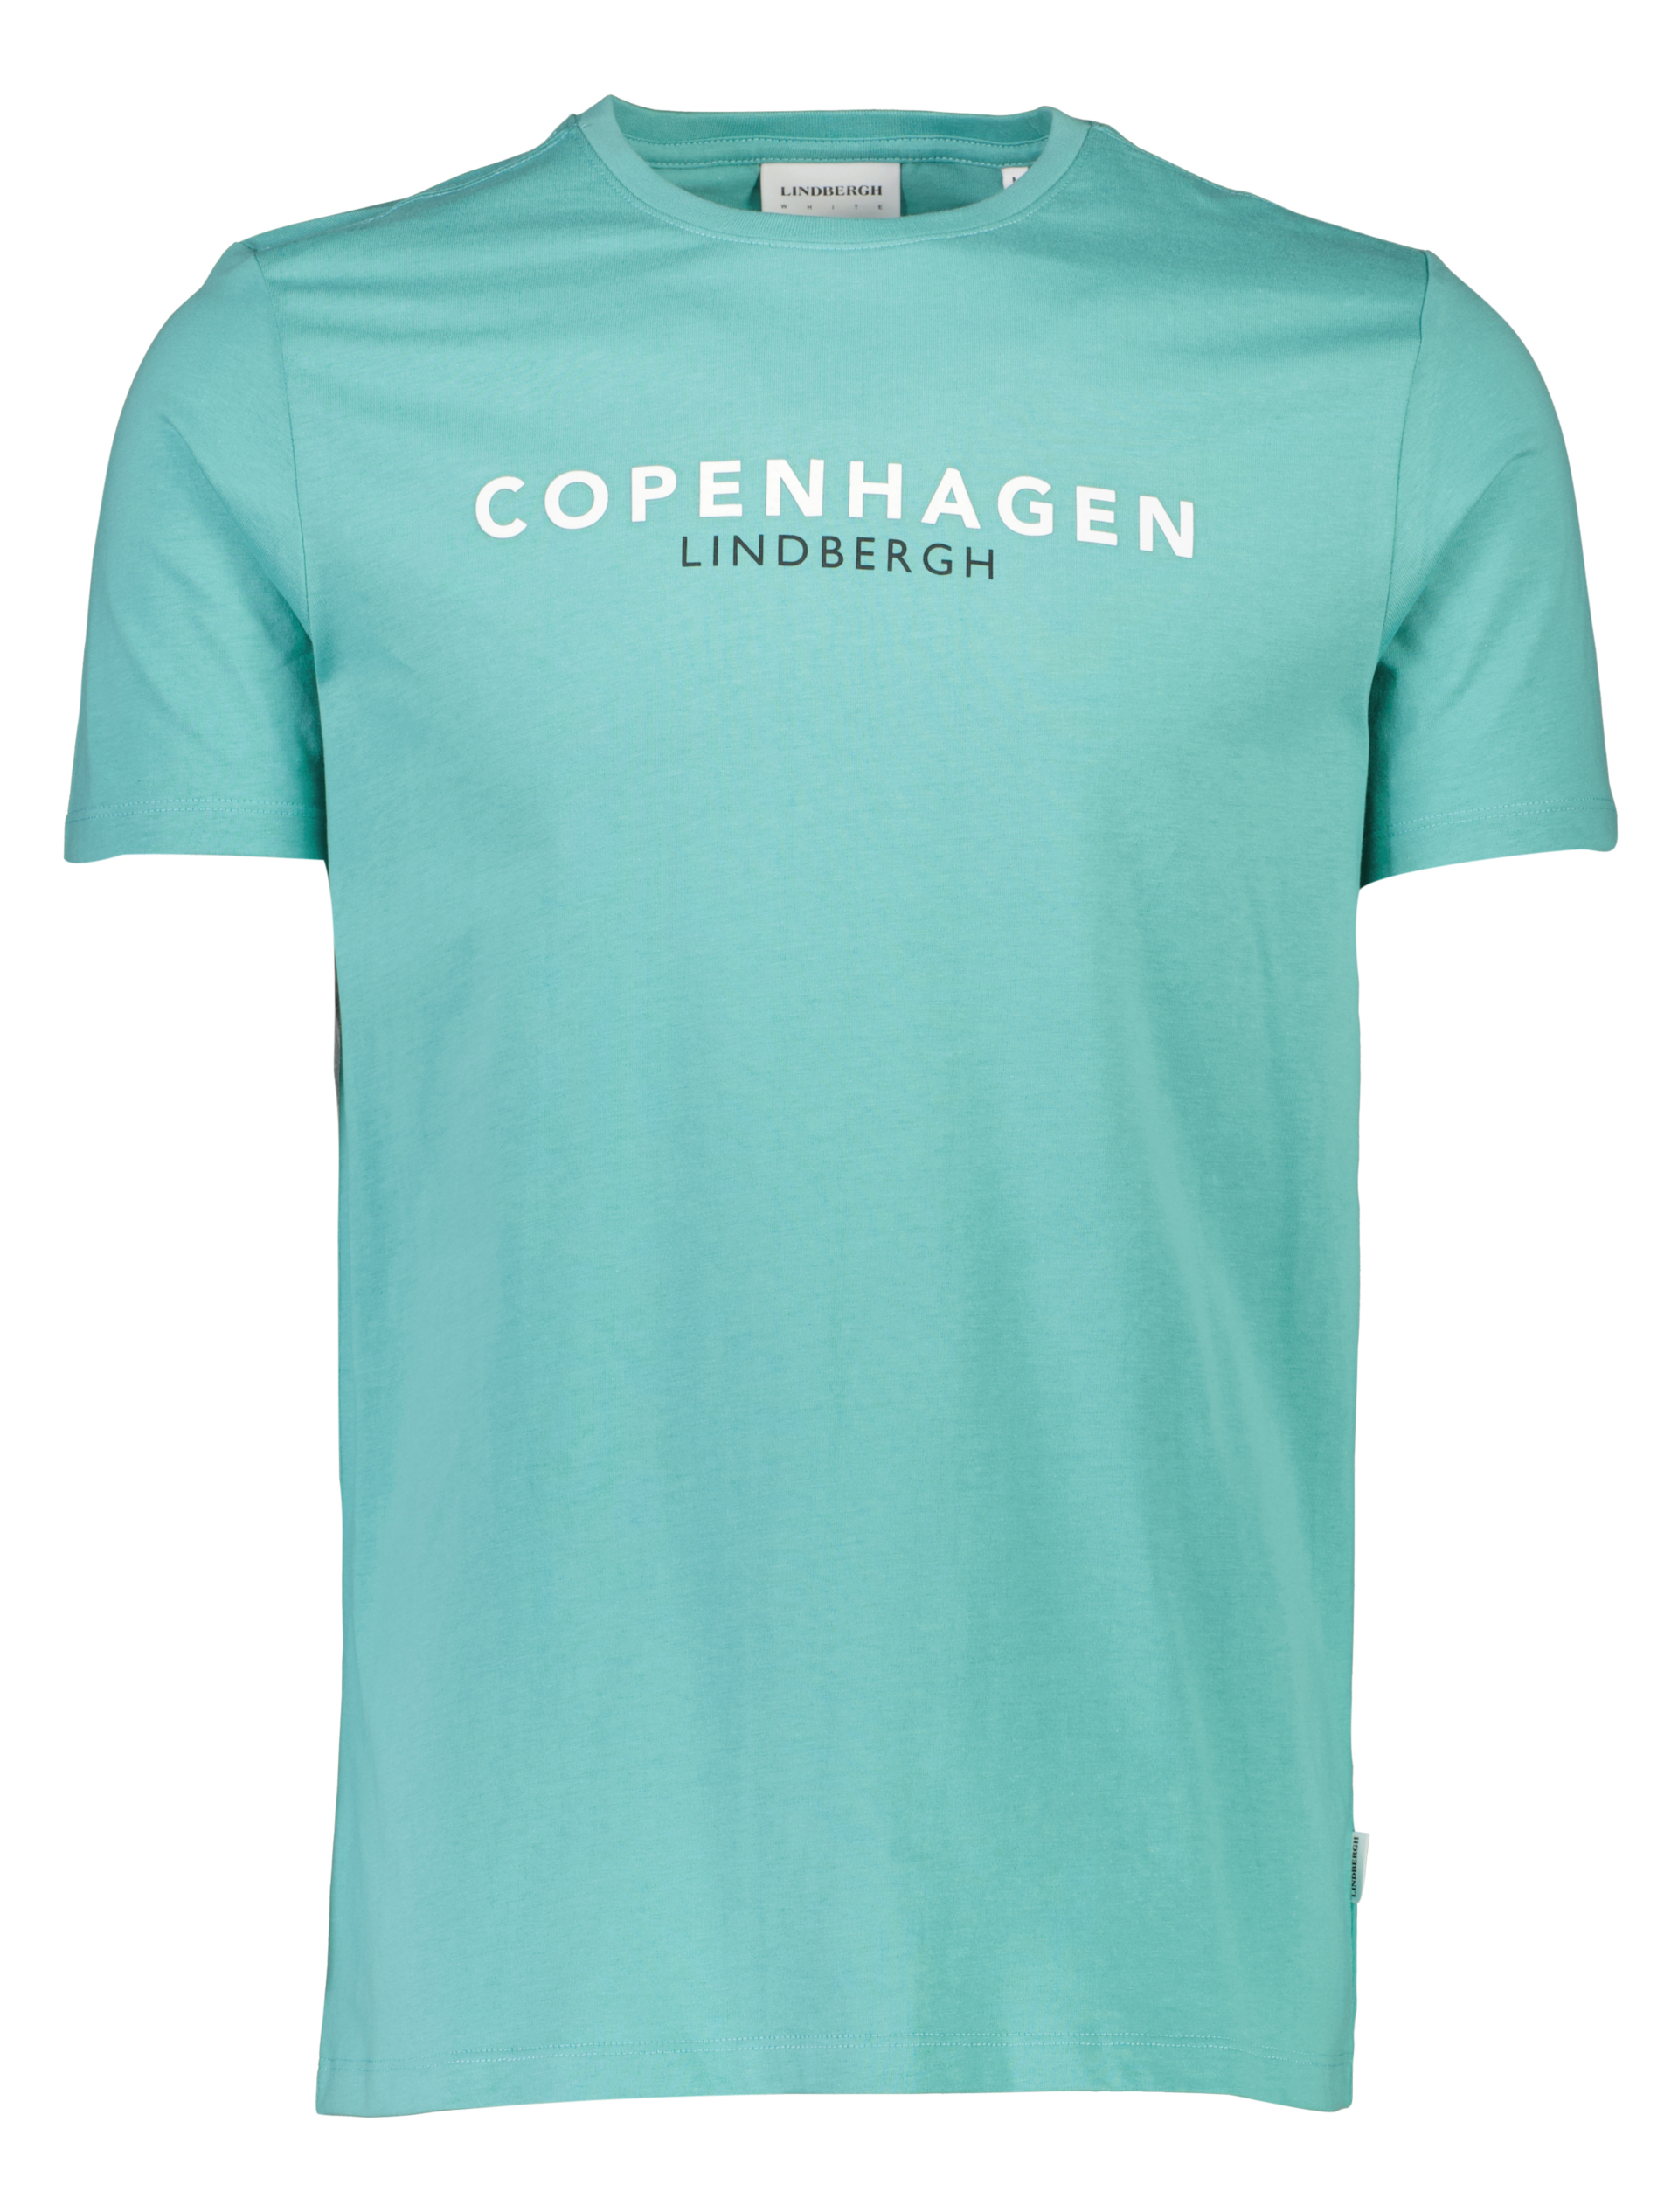 Lindbergh T-shirt grün / lt green 223